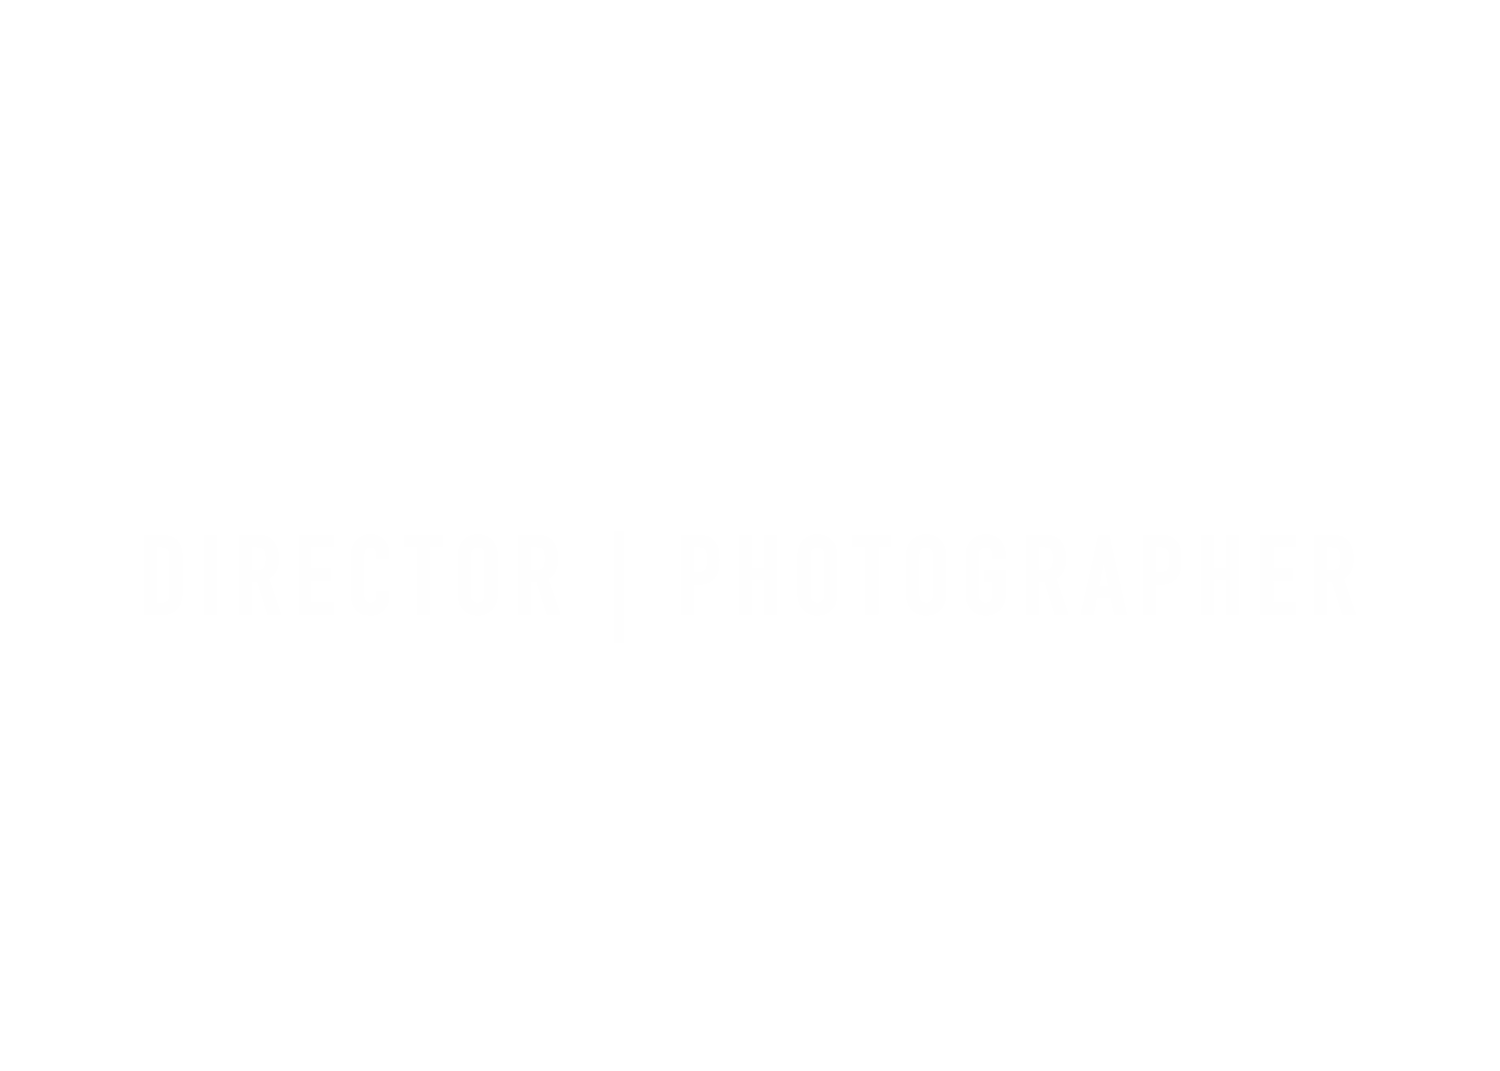 MATTHEW H. FORREY